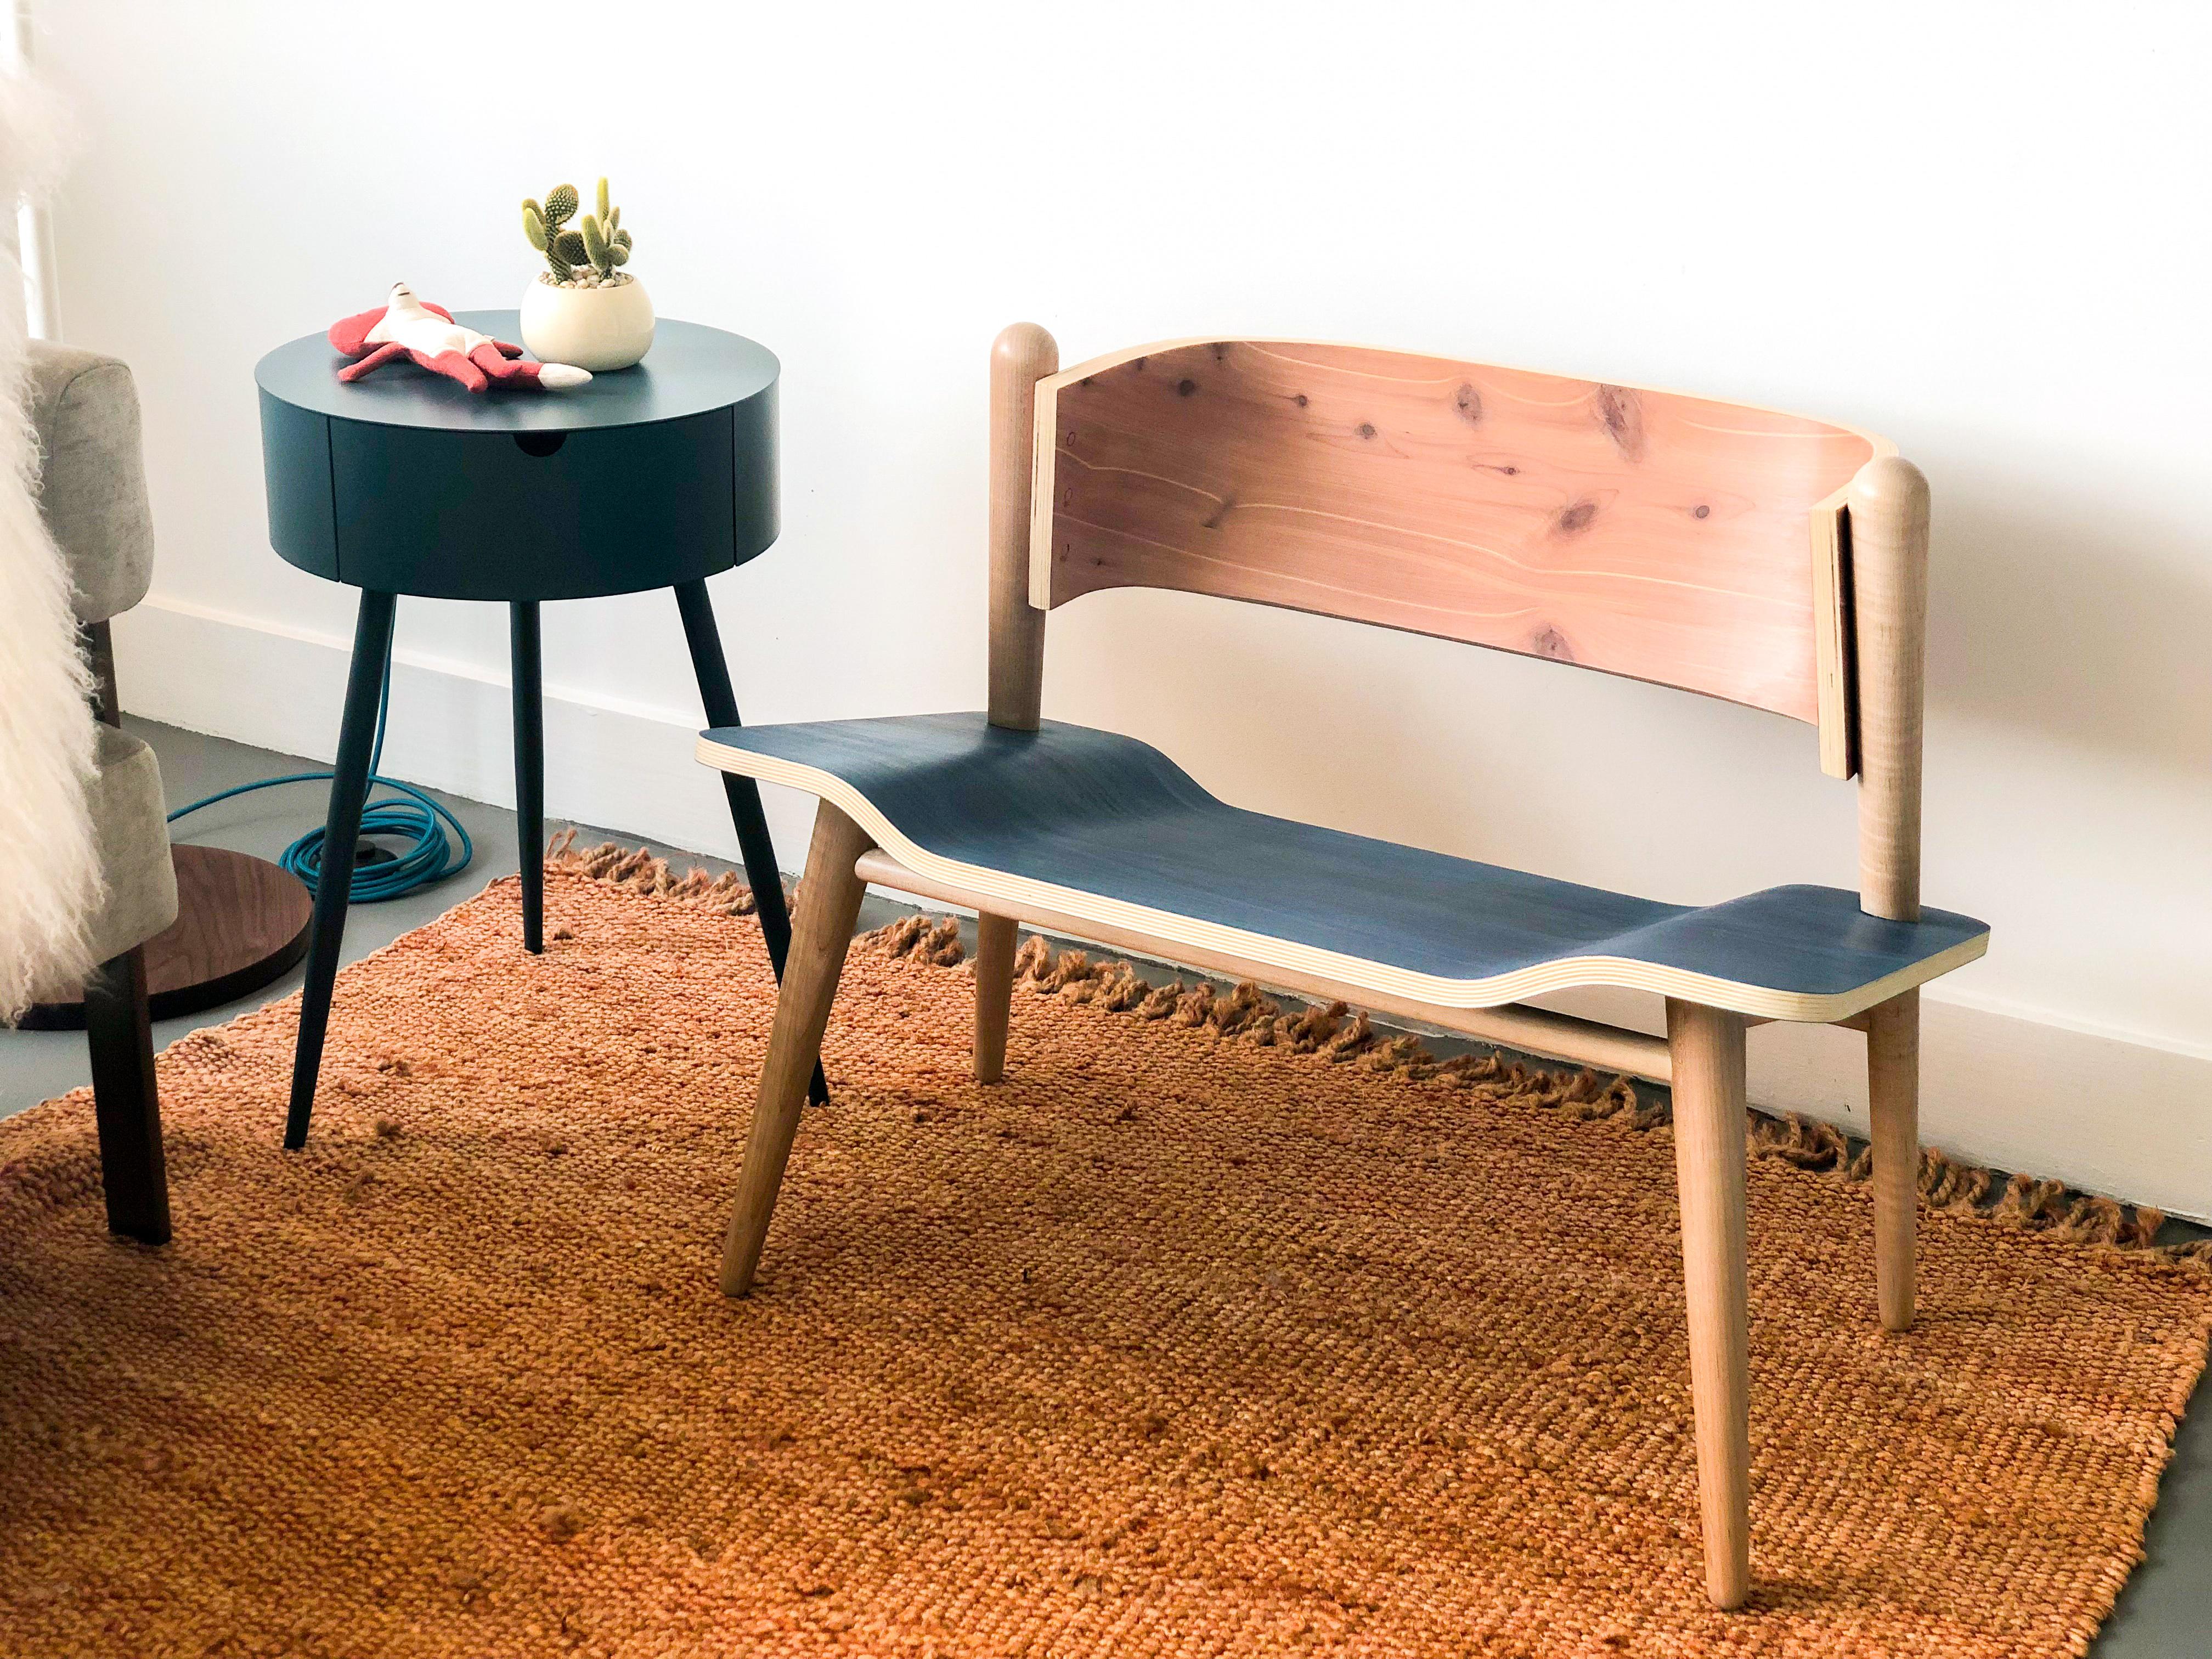 Der Cancri Chair hat eine einzigartig gestaltete Sitzfläche mit einem einladenden Charakter, der die scharfen Strukturwinkel elegant ausgleicht. Dieser Stuhl ist für einen hohen Sitzkomfort konzipiert und bietet dem Benutzer eine gemütliche